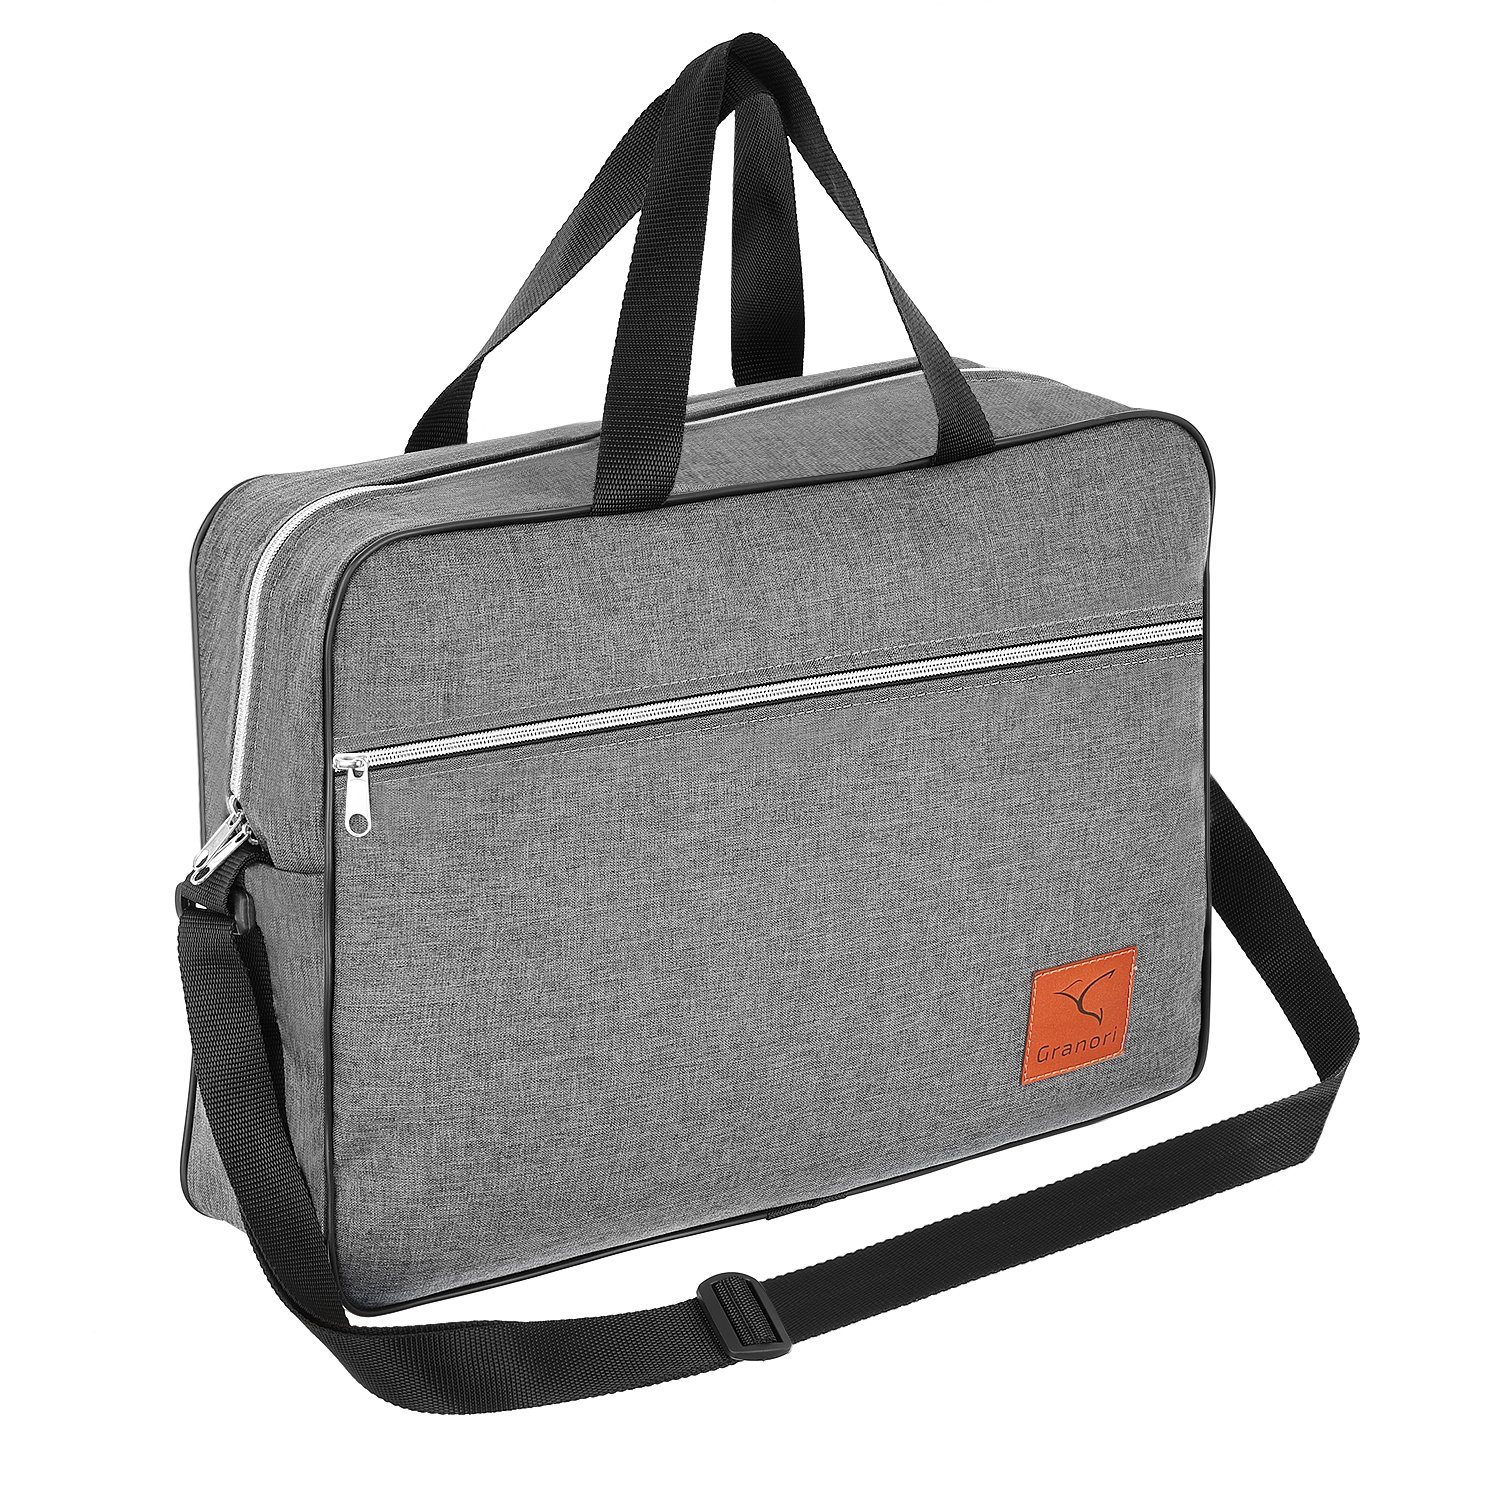 Granori Reisetasche 40x30x10 cm Handgepäck für Lufthansa Flug, extra leicht, mit verstellbarem Schultergurt Grau